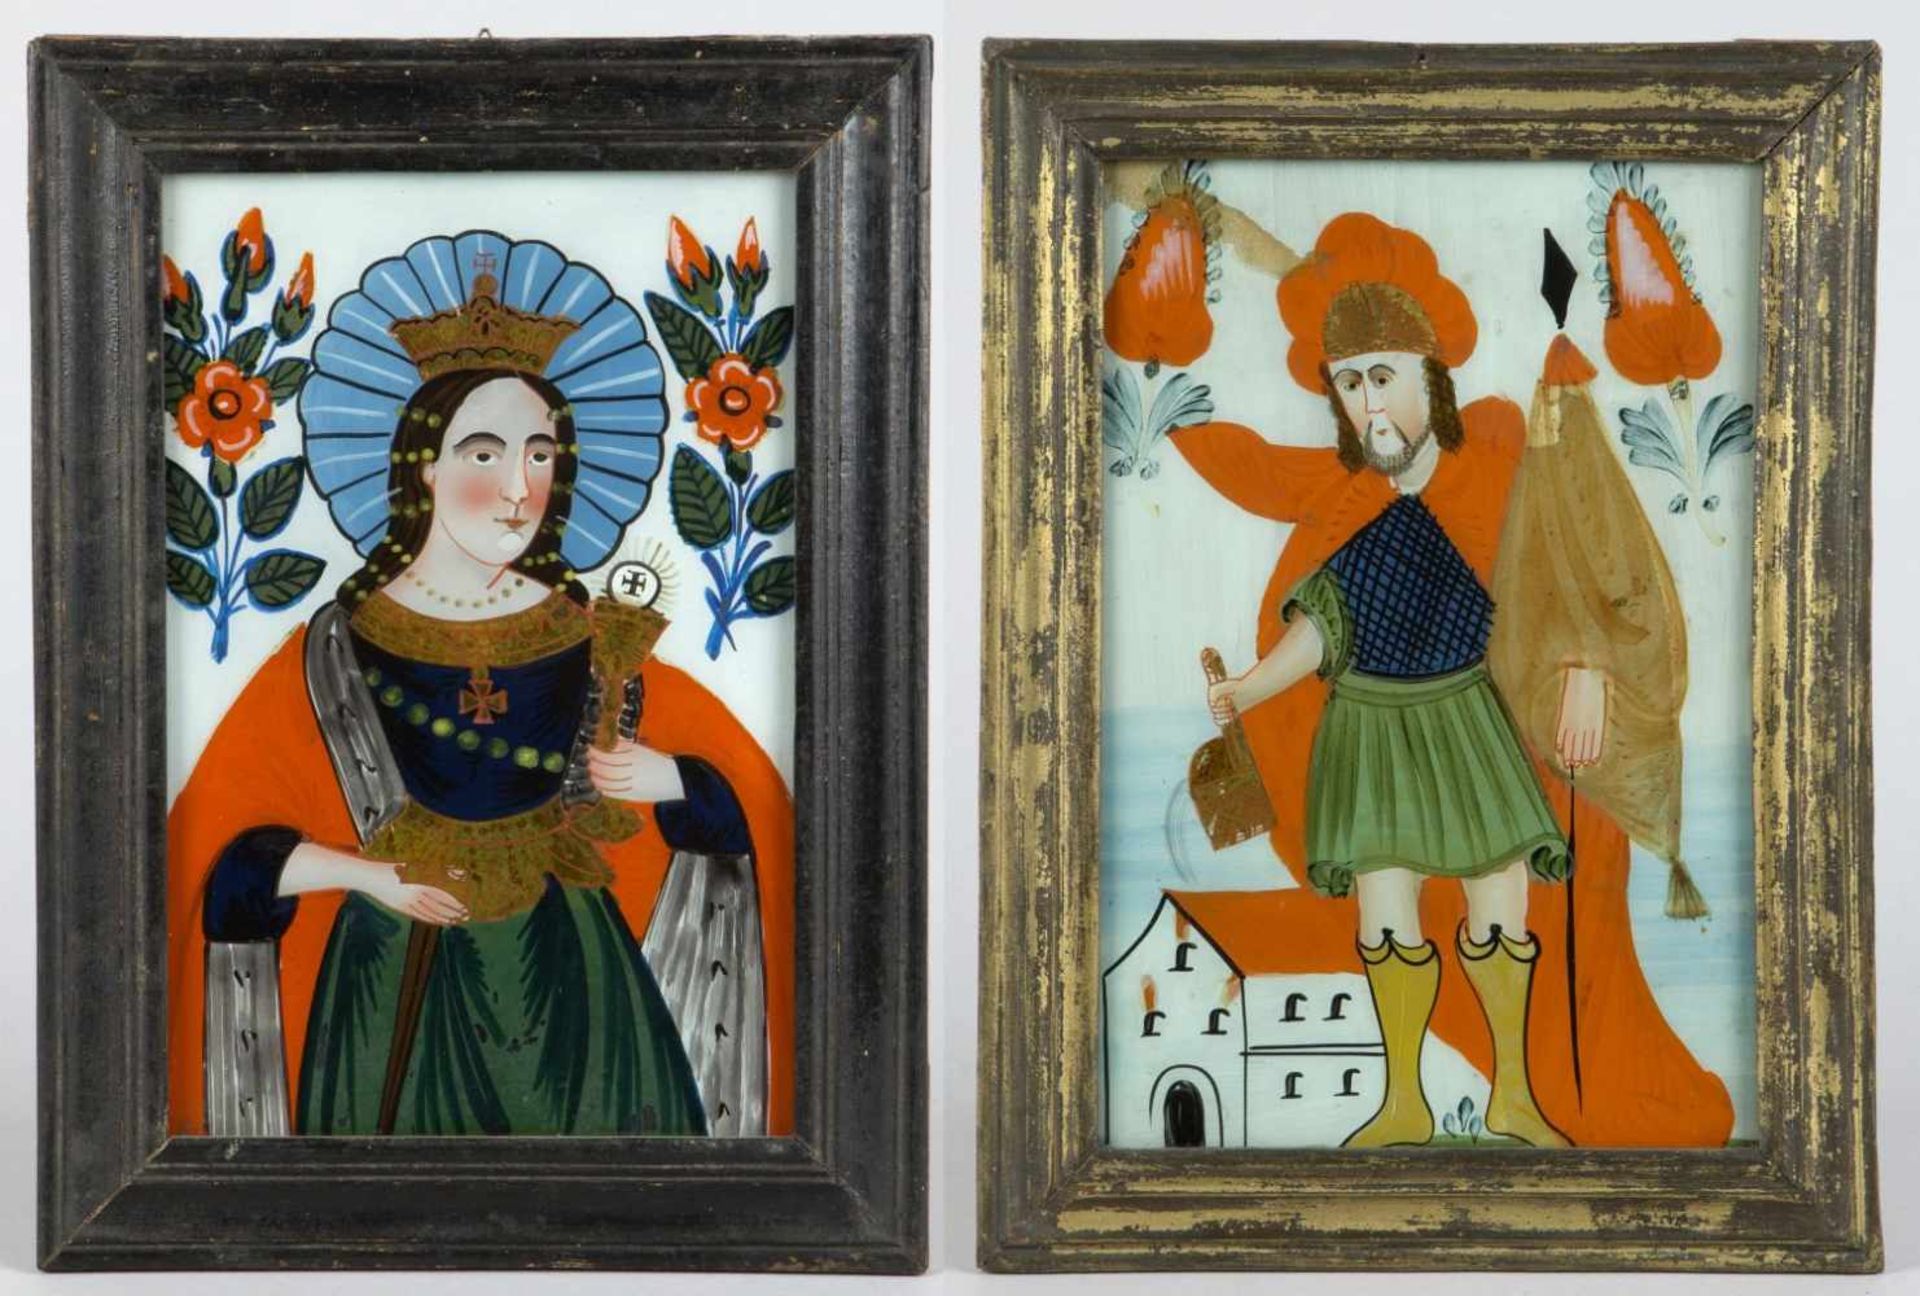 Zwei Hinterglasbilder "Hl. Florian" und "Hl. Barbara"Tempera auf Glas. Buchers oder Sandl, 19. Jh.